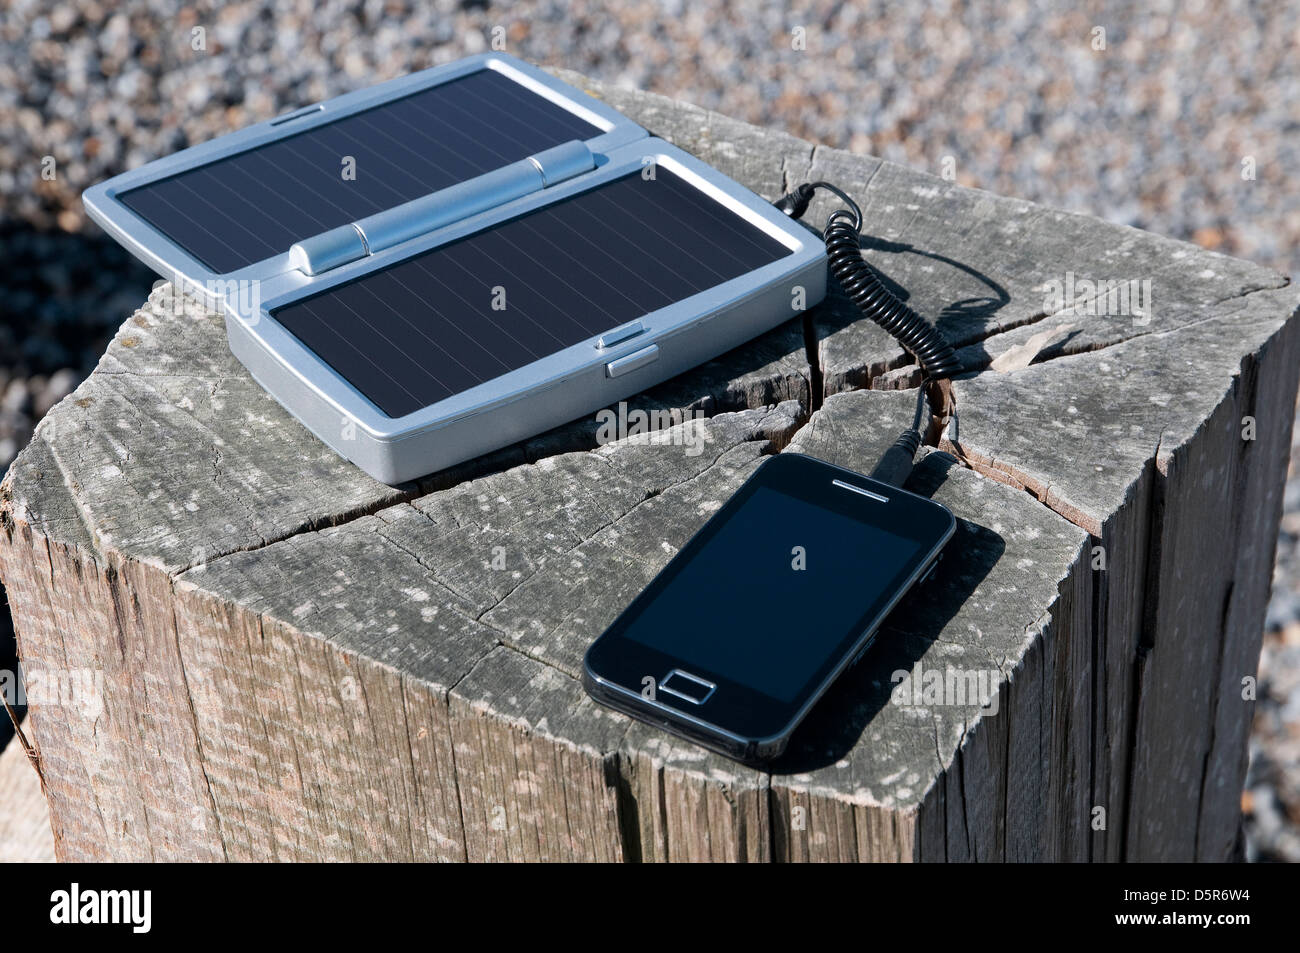 Solenoide Sinfonía Sustancialmente Teléfono móvil cargador solar Fotografía de stock - Alamy